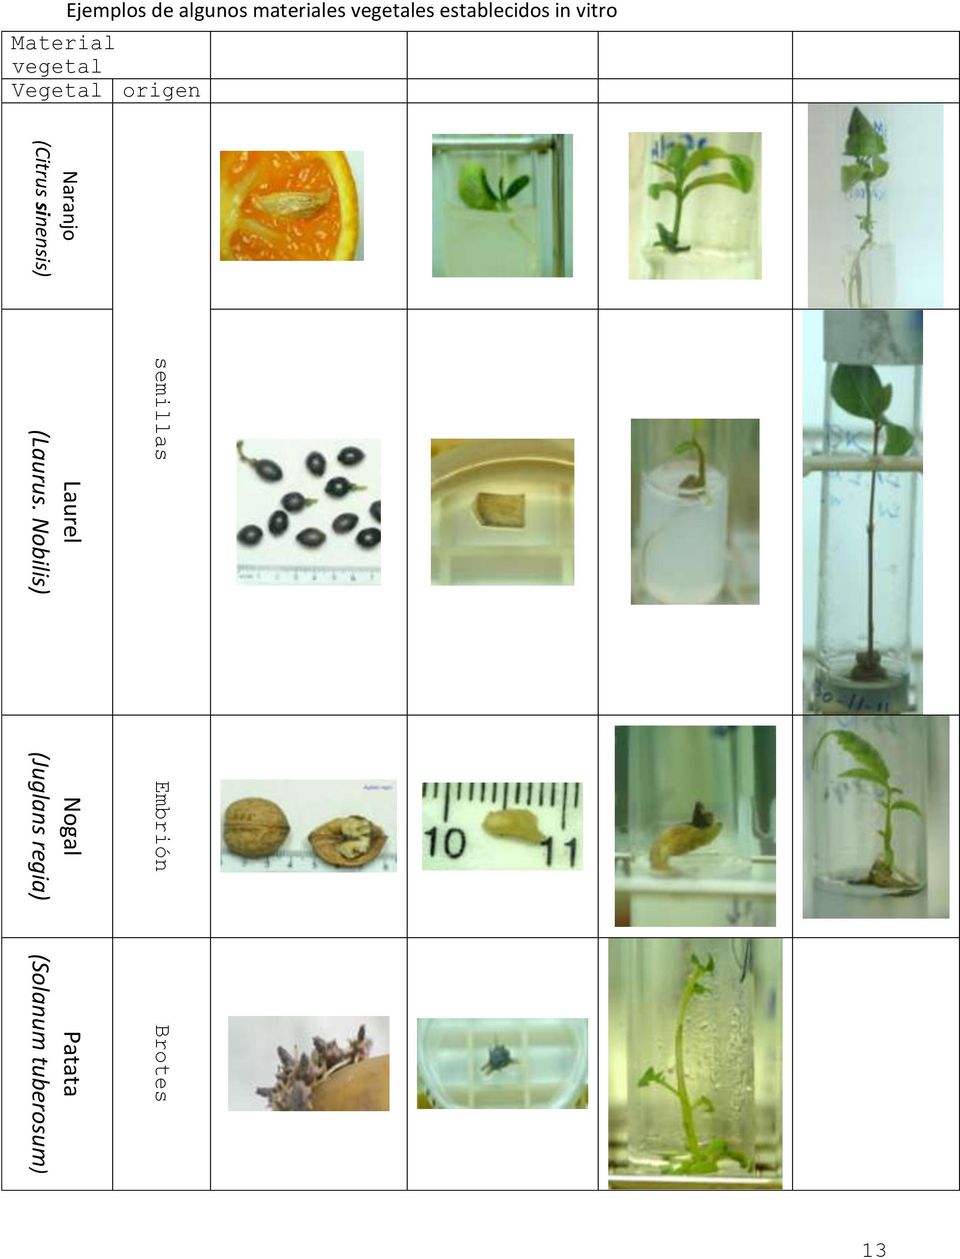 Ejemplos de algunos materiales vegetales establecidos